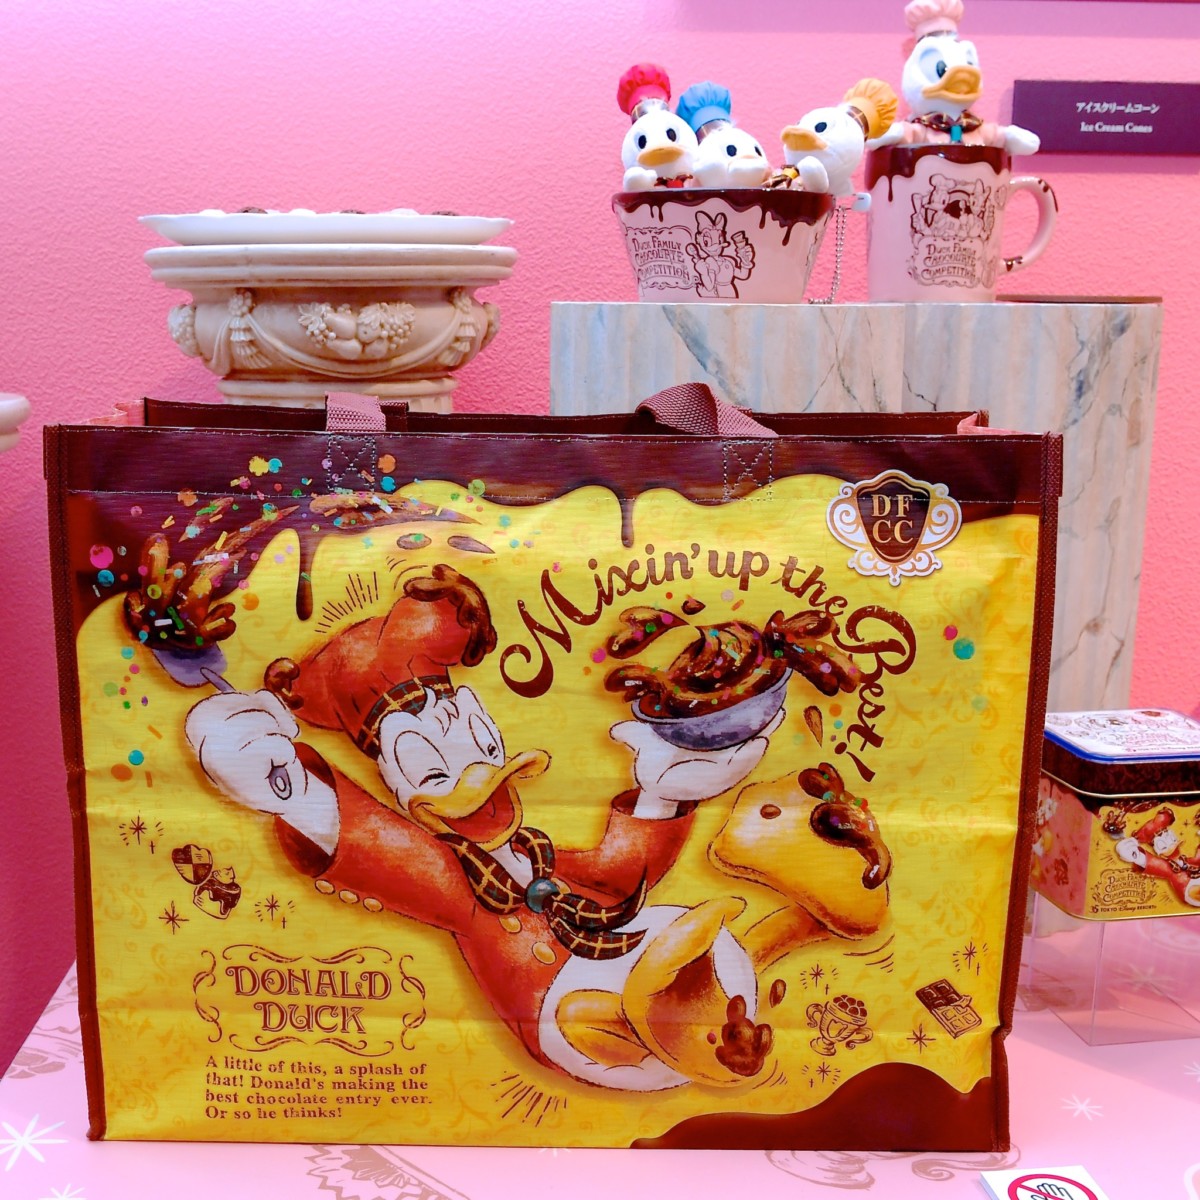 ドナルドたちのチョコレートクランチのお店 東京ディズニーリゾート35周年期間限定ショップ Duck Family Chocolate Competition グッズ Dtimes